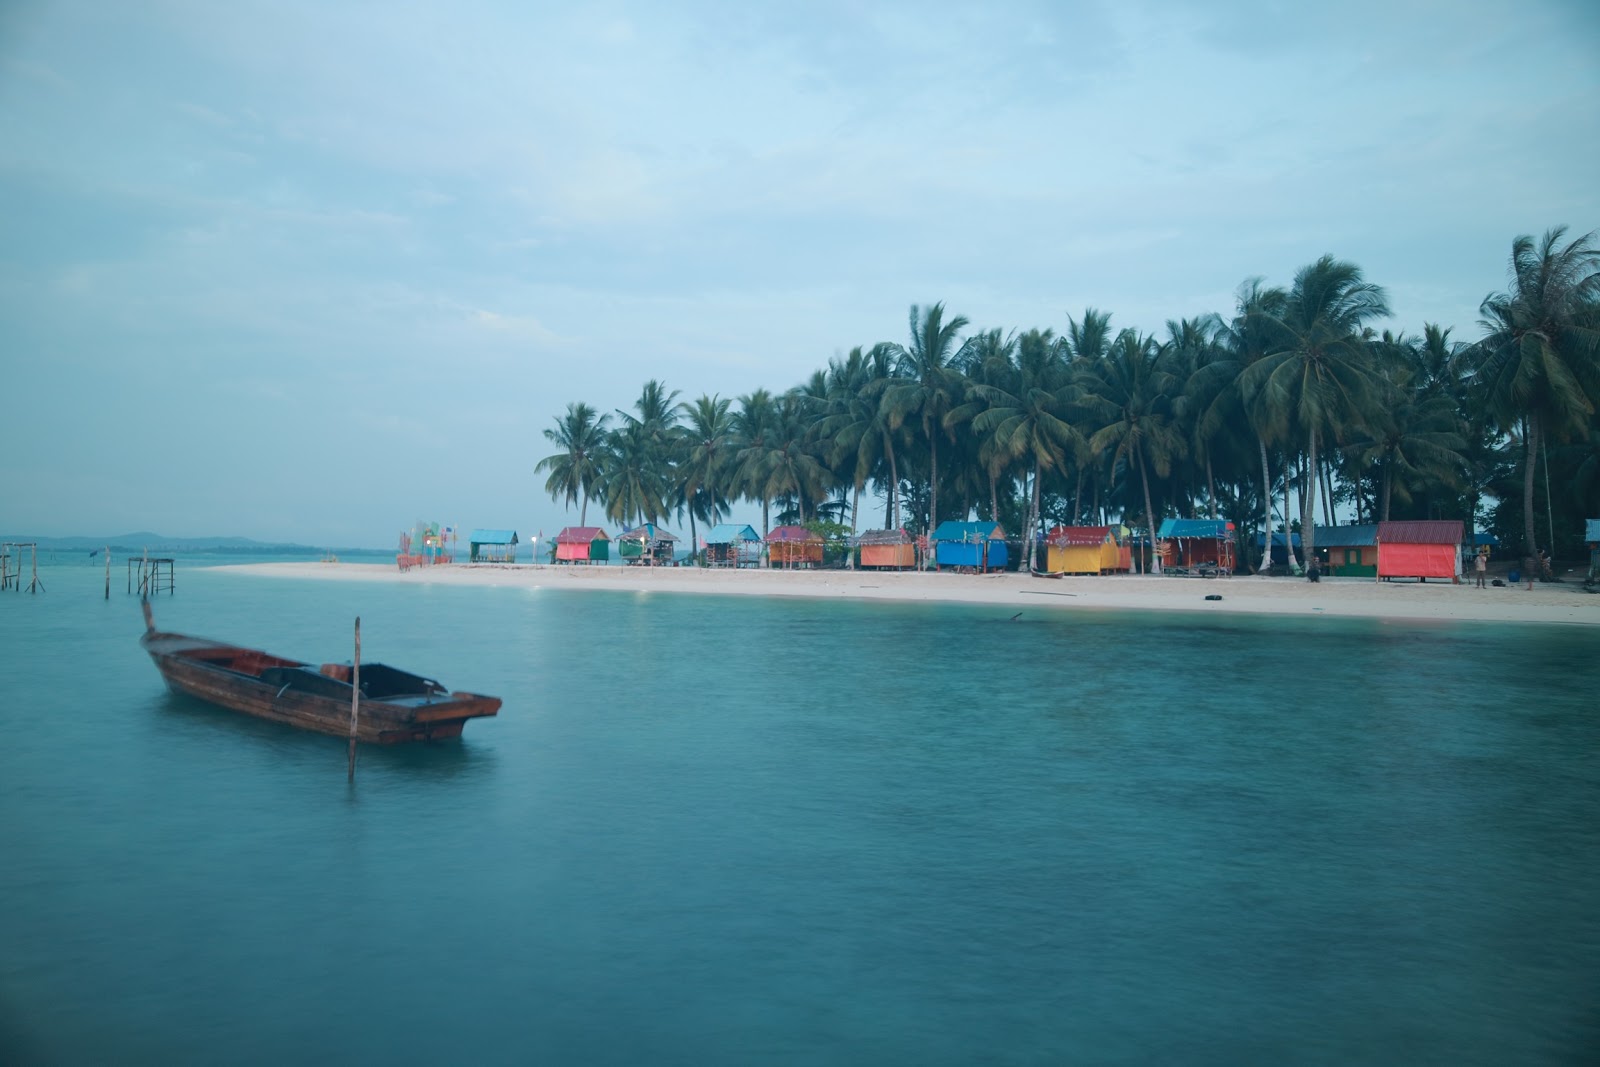 Foto di Wisata Pulau Mubut Darat - luogo popolare tra gli intenditori del relax